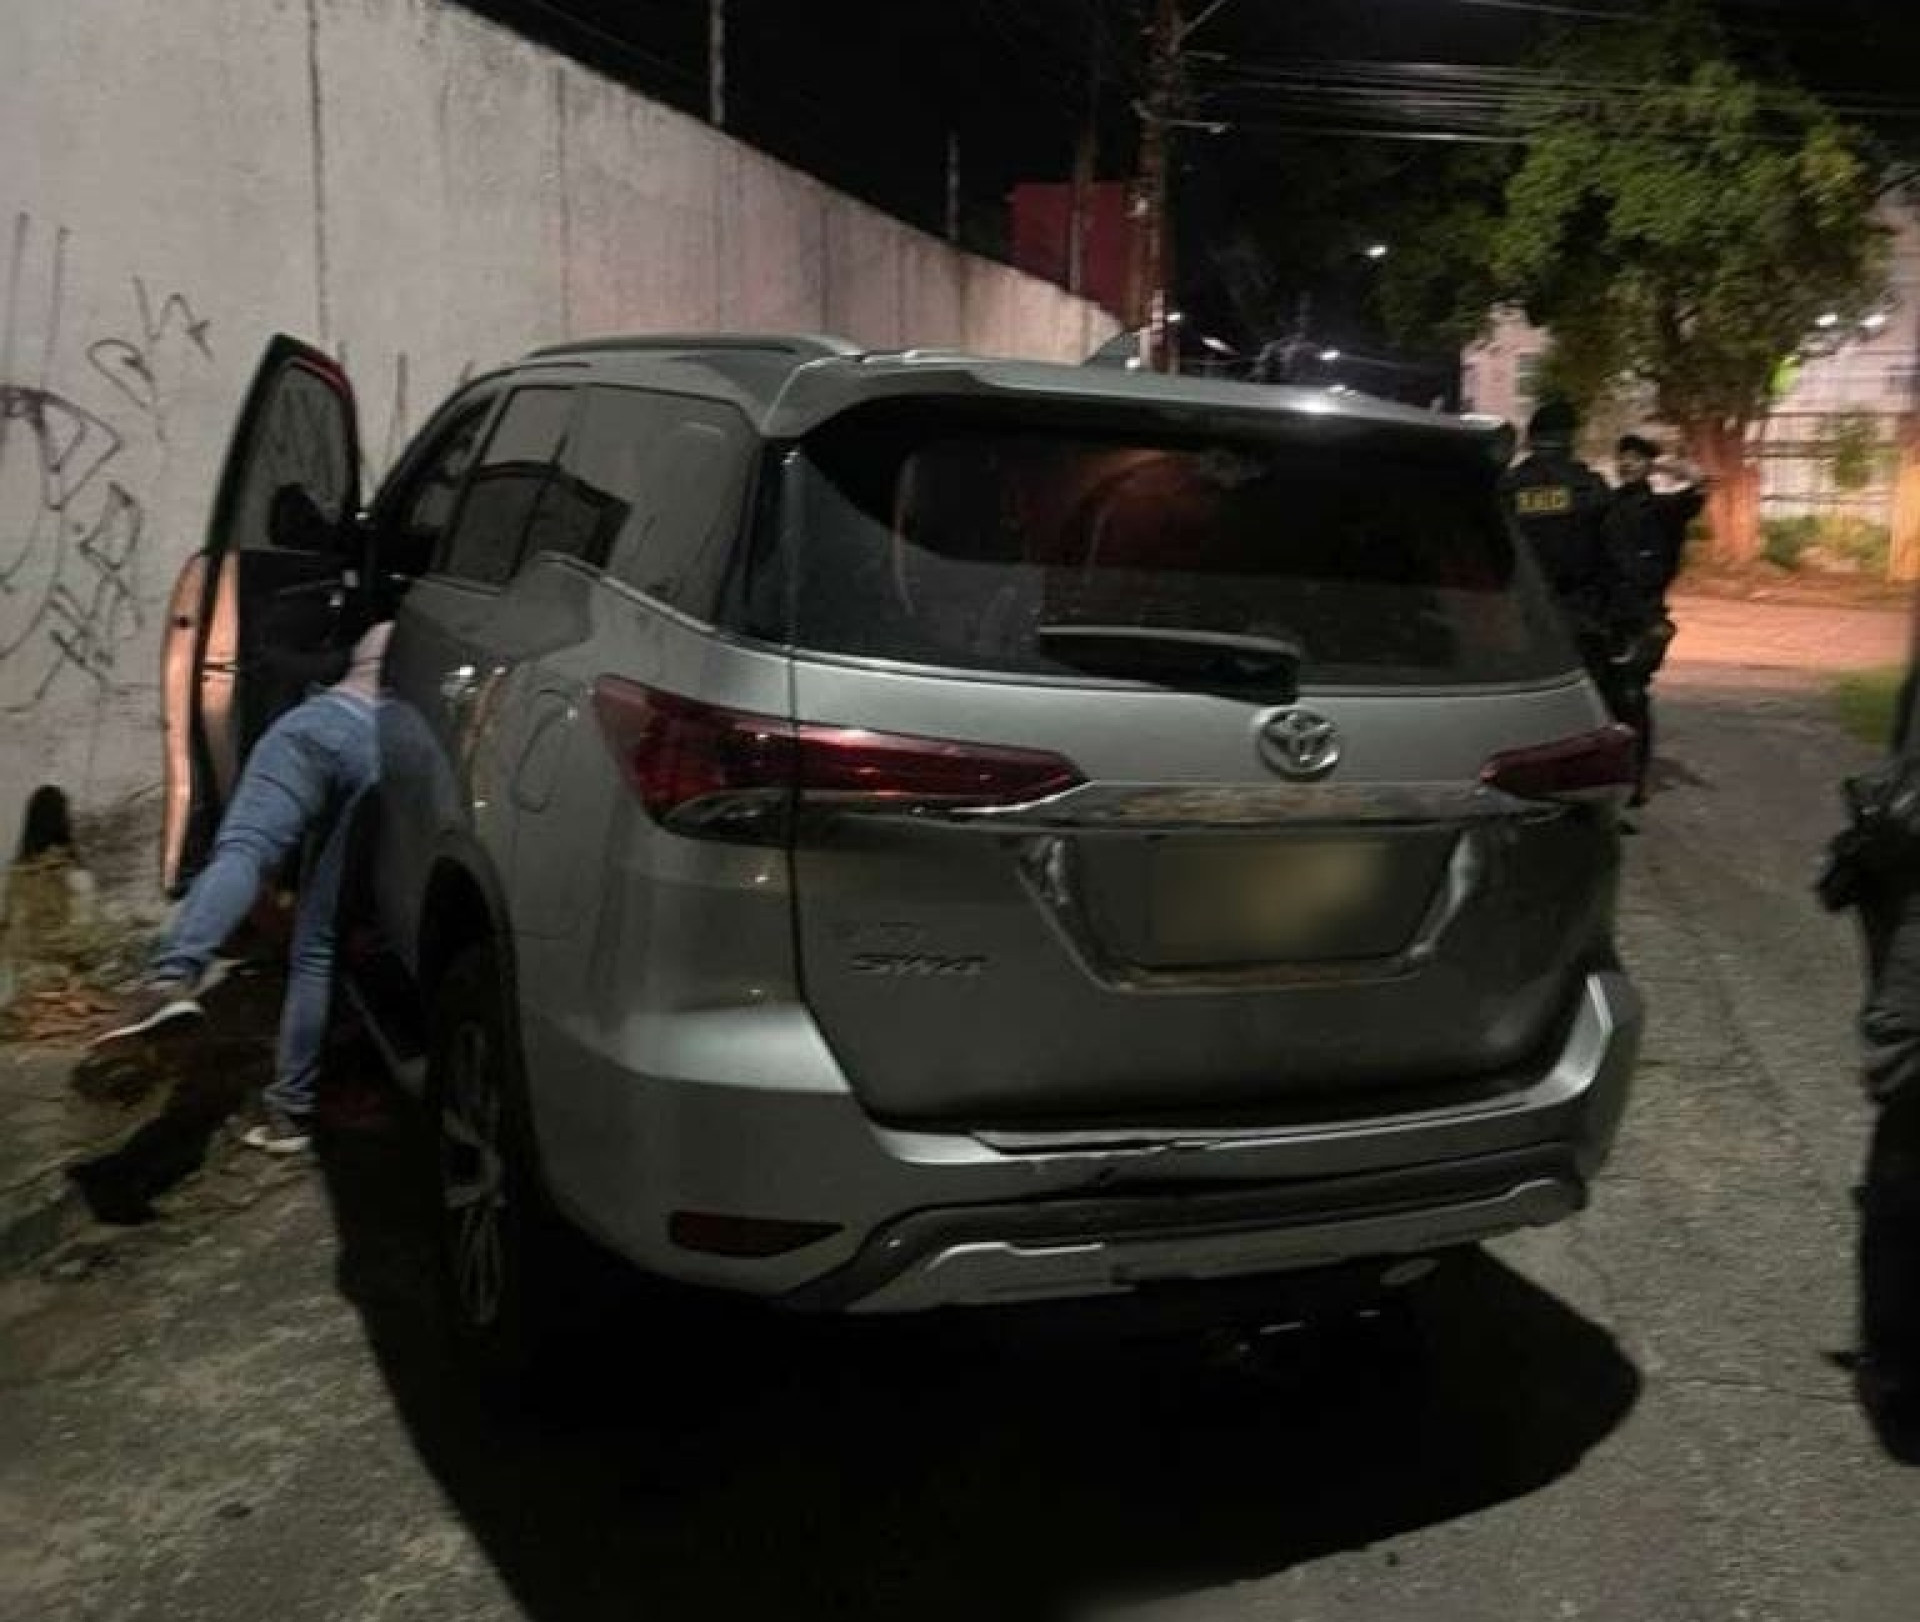 ￼SEQUESTRO relâmpago foi registrado no bairro Luciano Cavalcante, em Fortaleza (Foto: Via Whatsapp do O POVO)